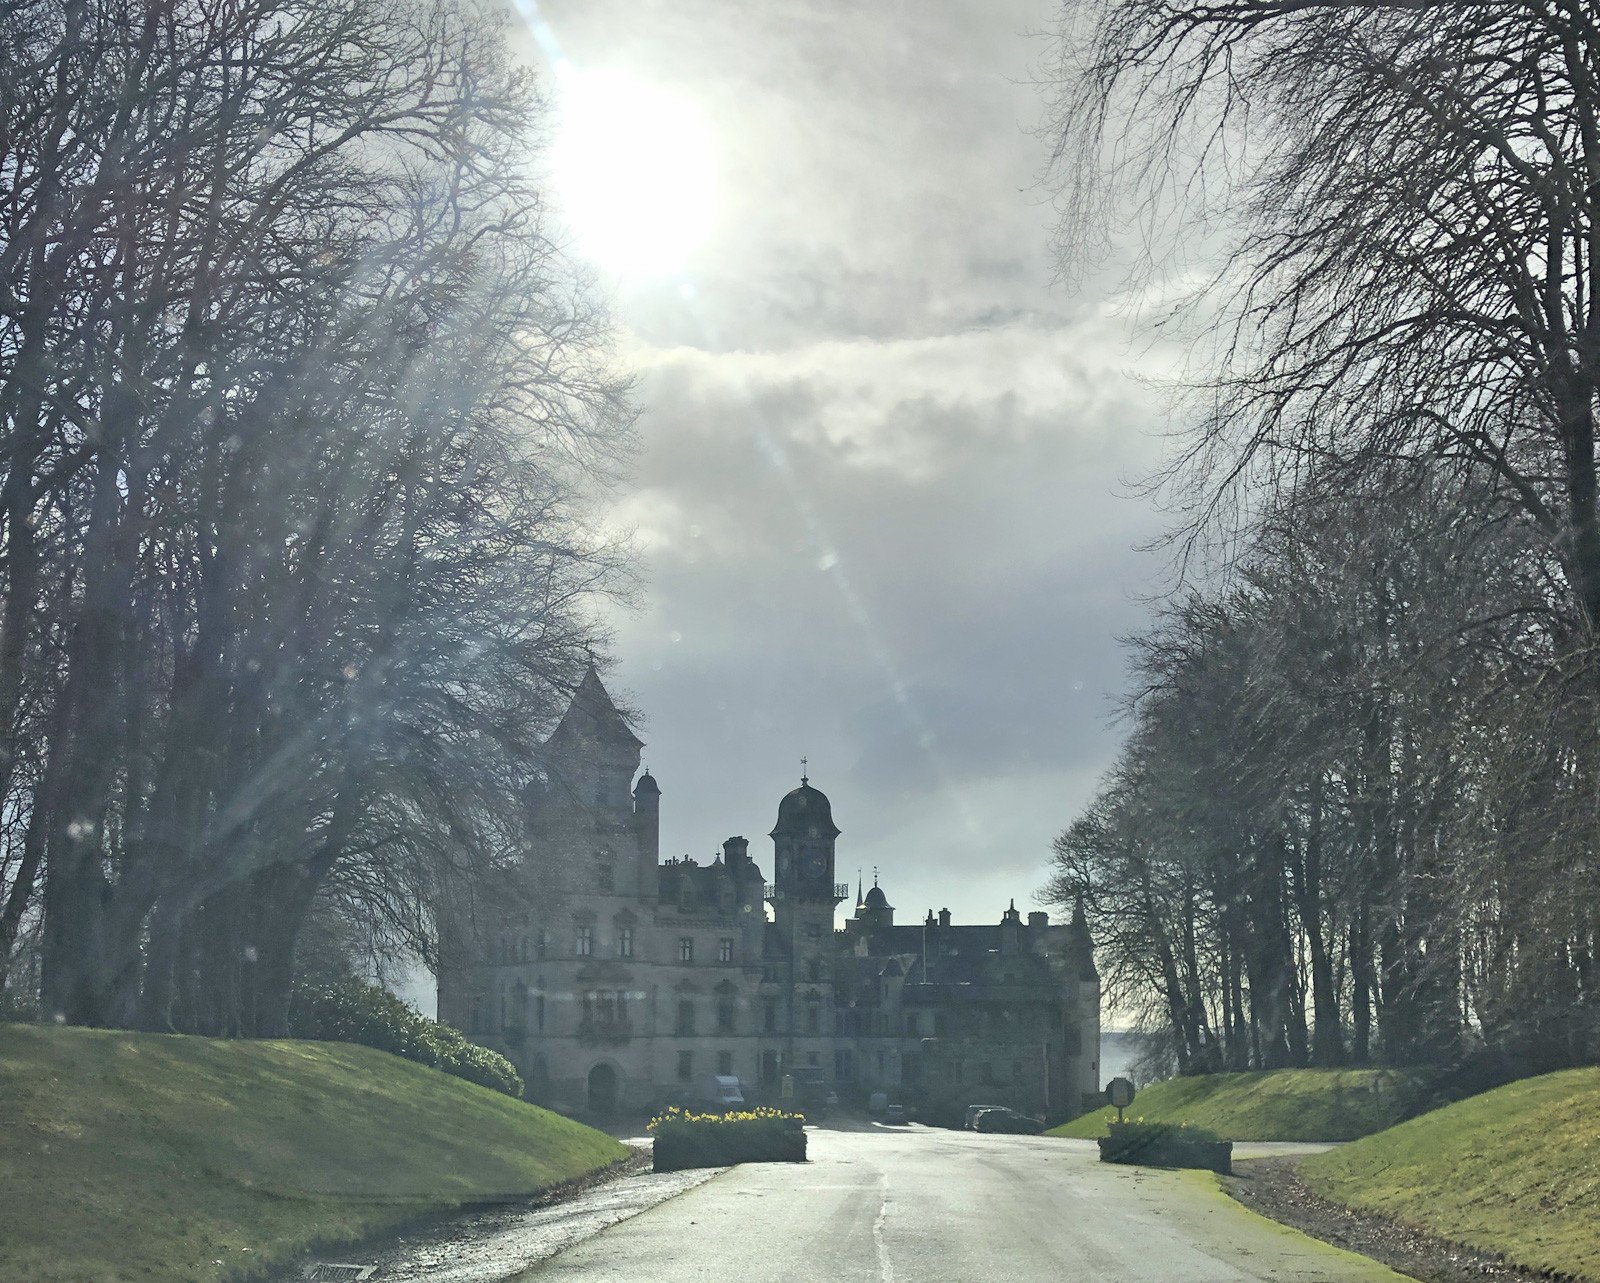 arriving at Dunrobin Castle